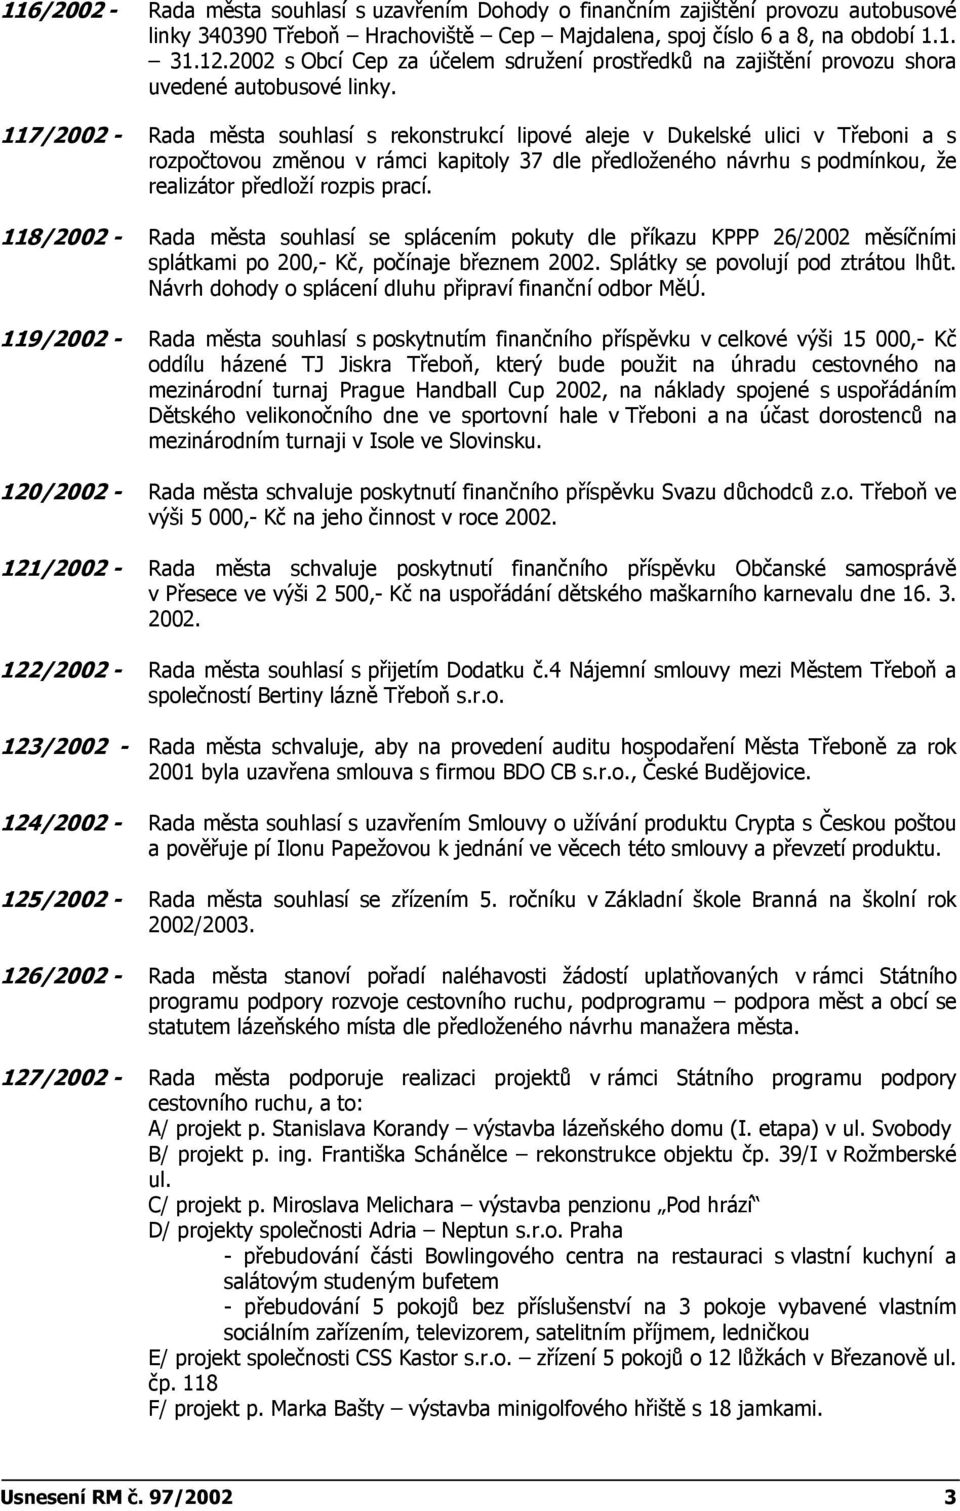 117/2002 - Rada města souhlasí s rekonstrukcí lipové aleje v Dukelské ulici v Třeboni a s rozpočtovou změnou v rámci kapitoly 37 dle předloženého návrhu s podmínkou, že realizátor předloží rozpis